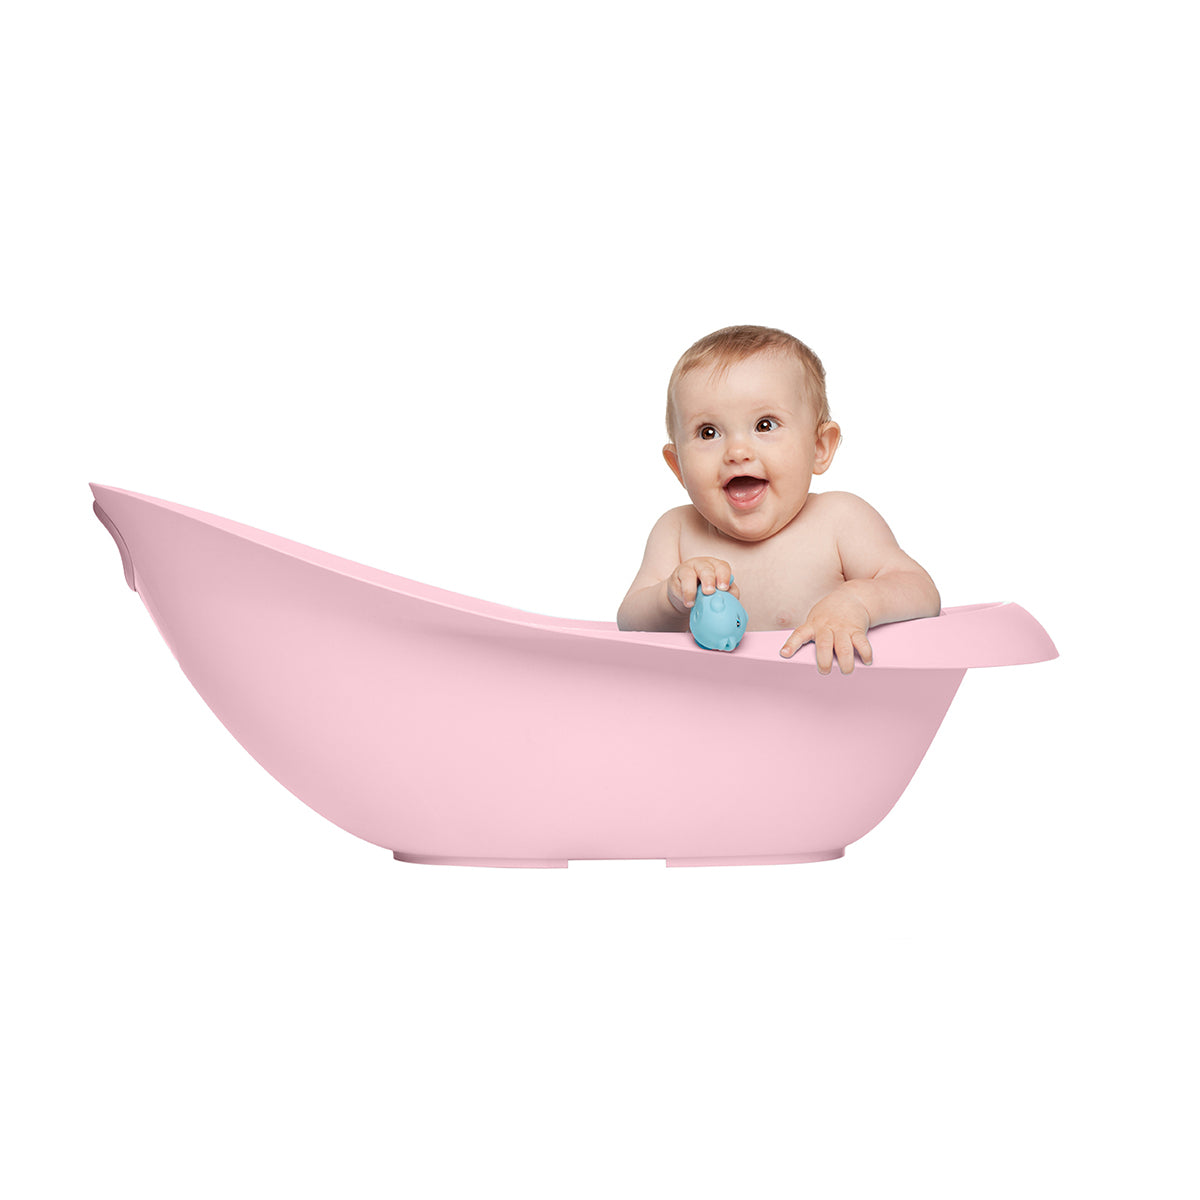 Snuggletime Baby Bath Tub